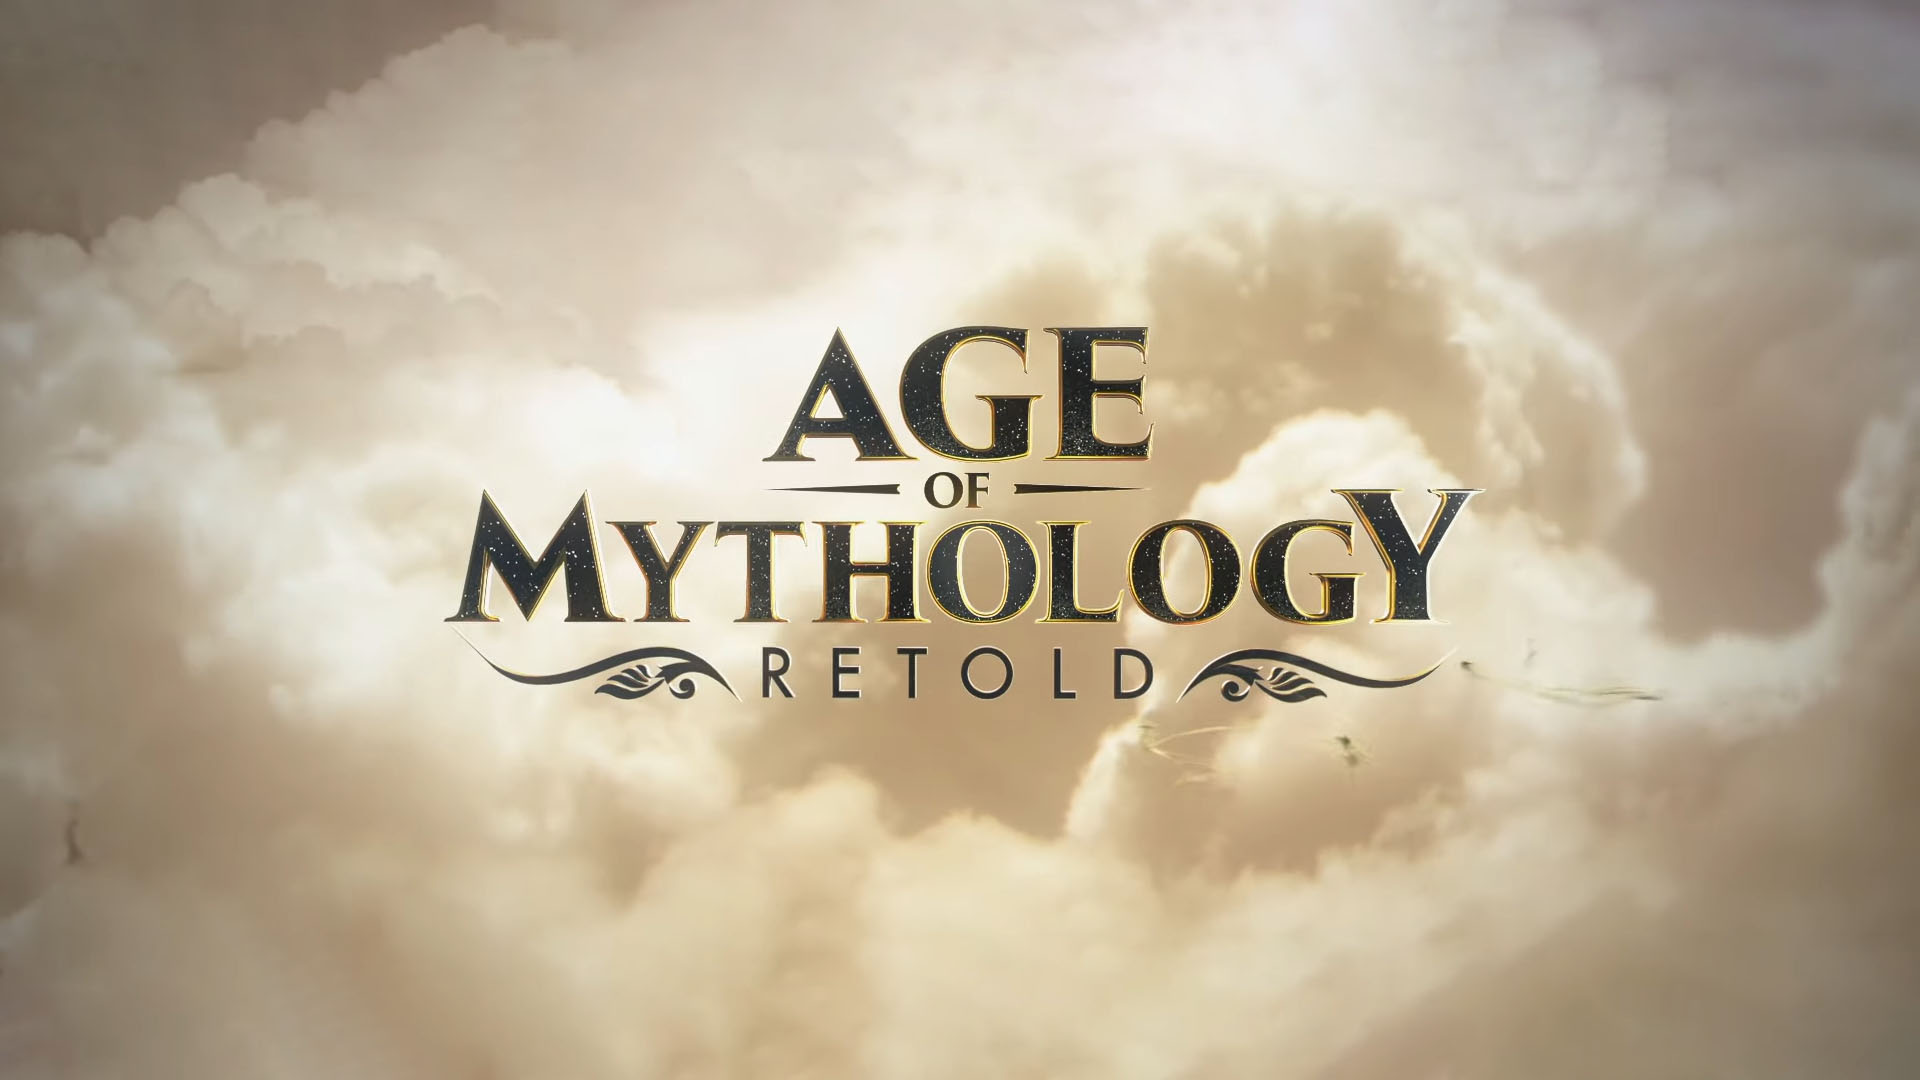 Age of Mythology, Age of Mythology Retold